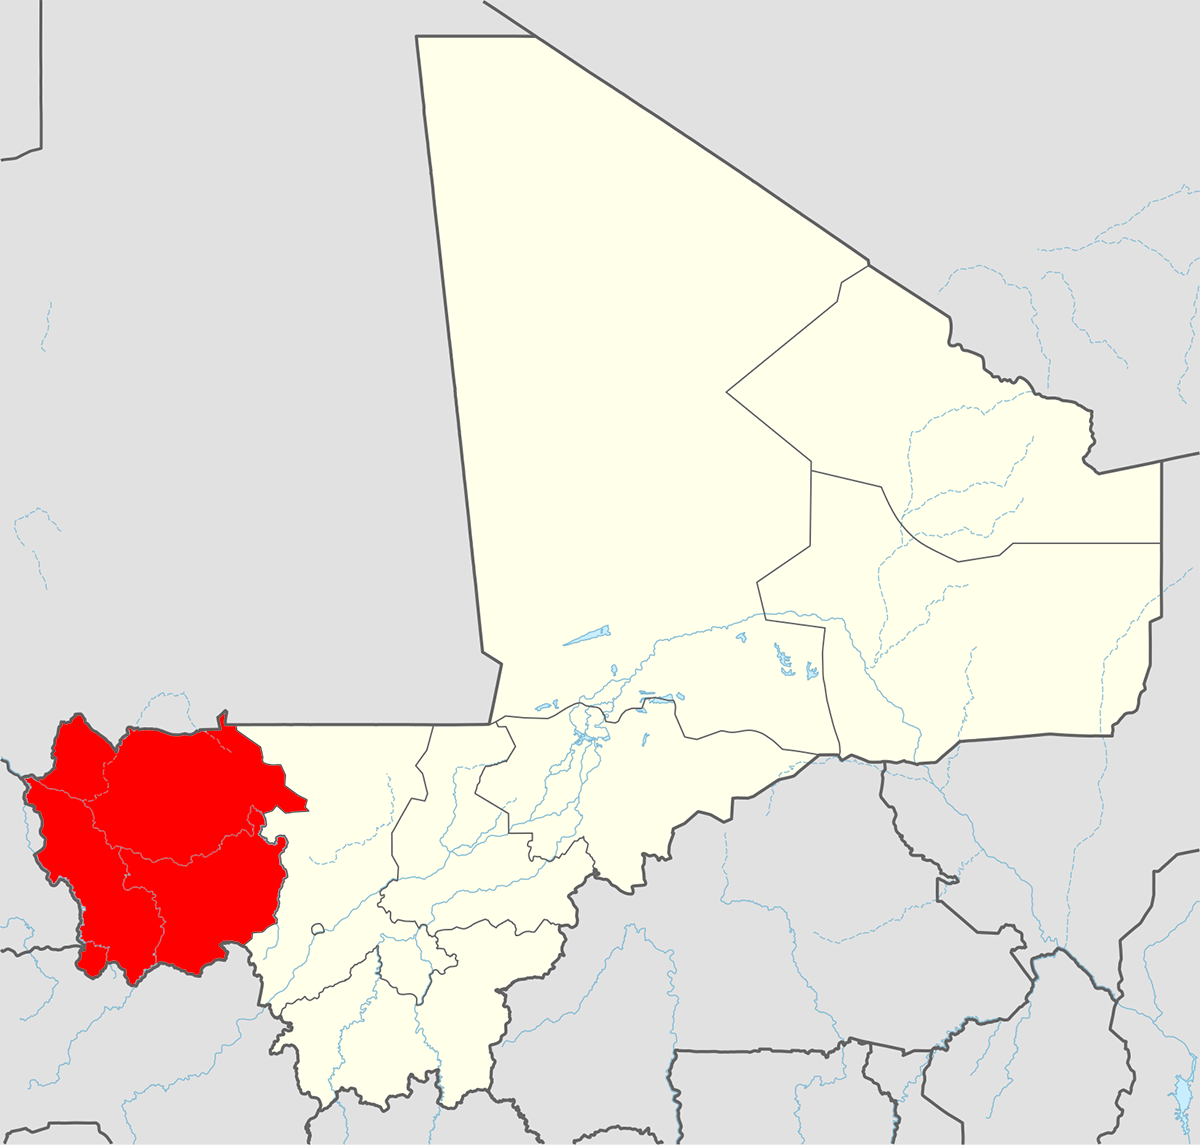 Karte Mali mit farblich markierter Region Kayes